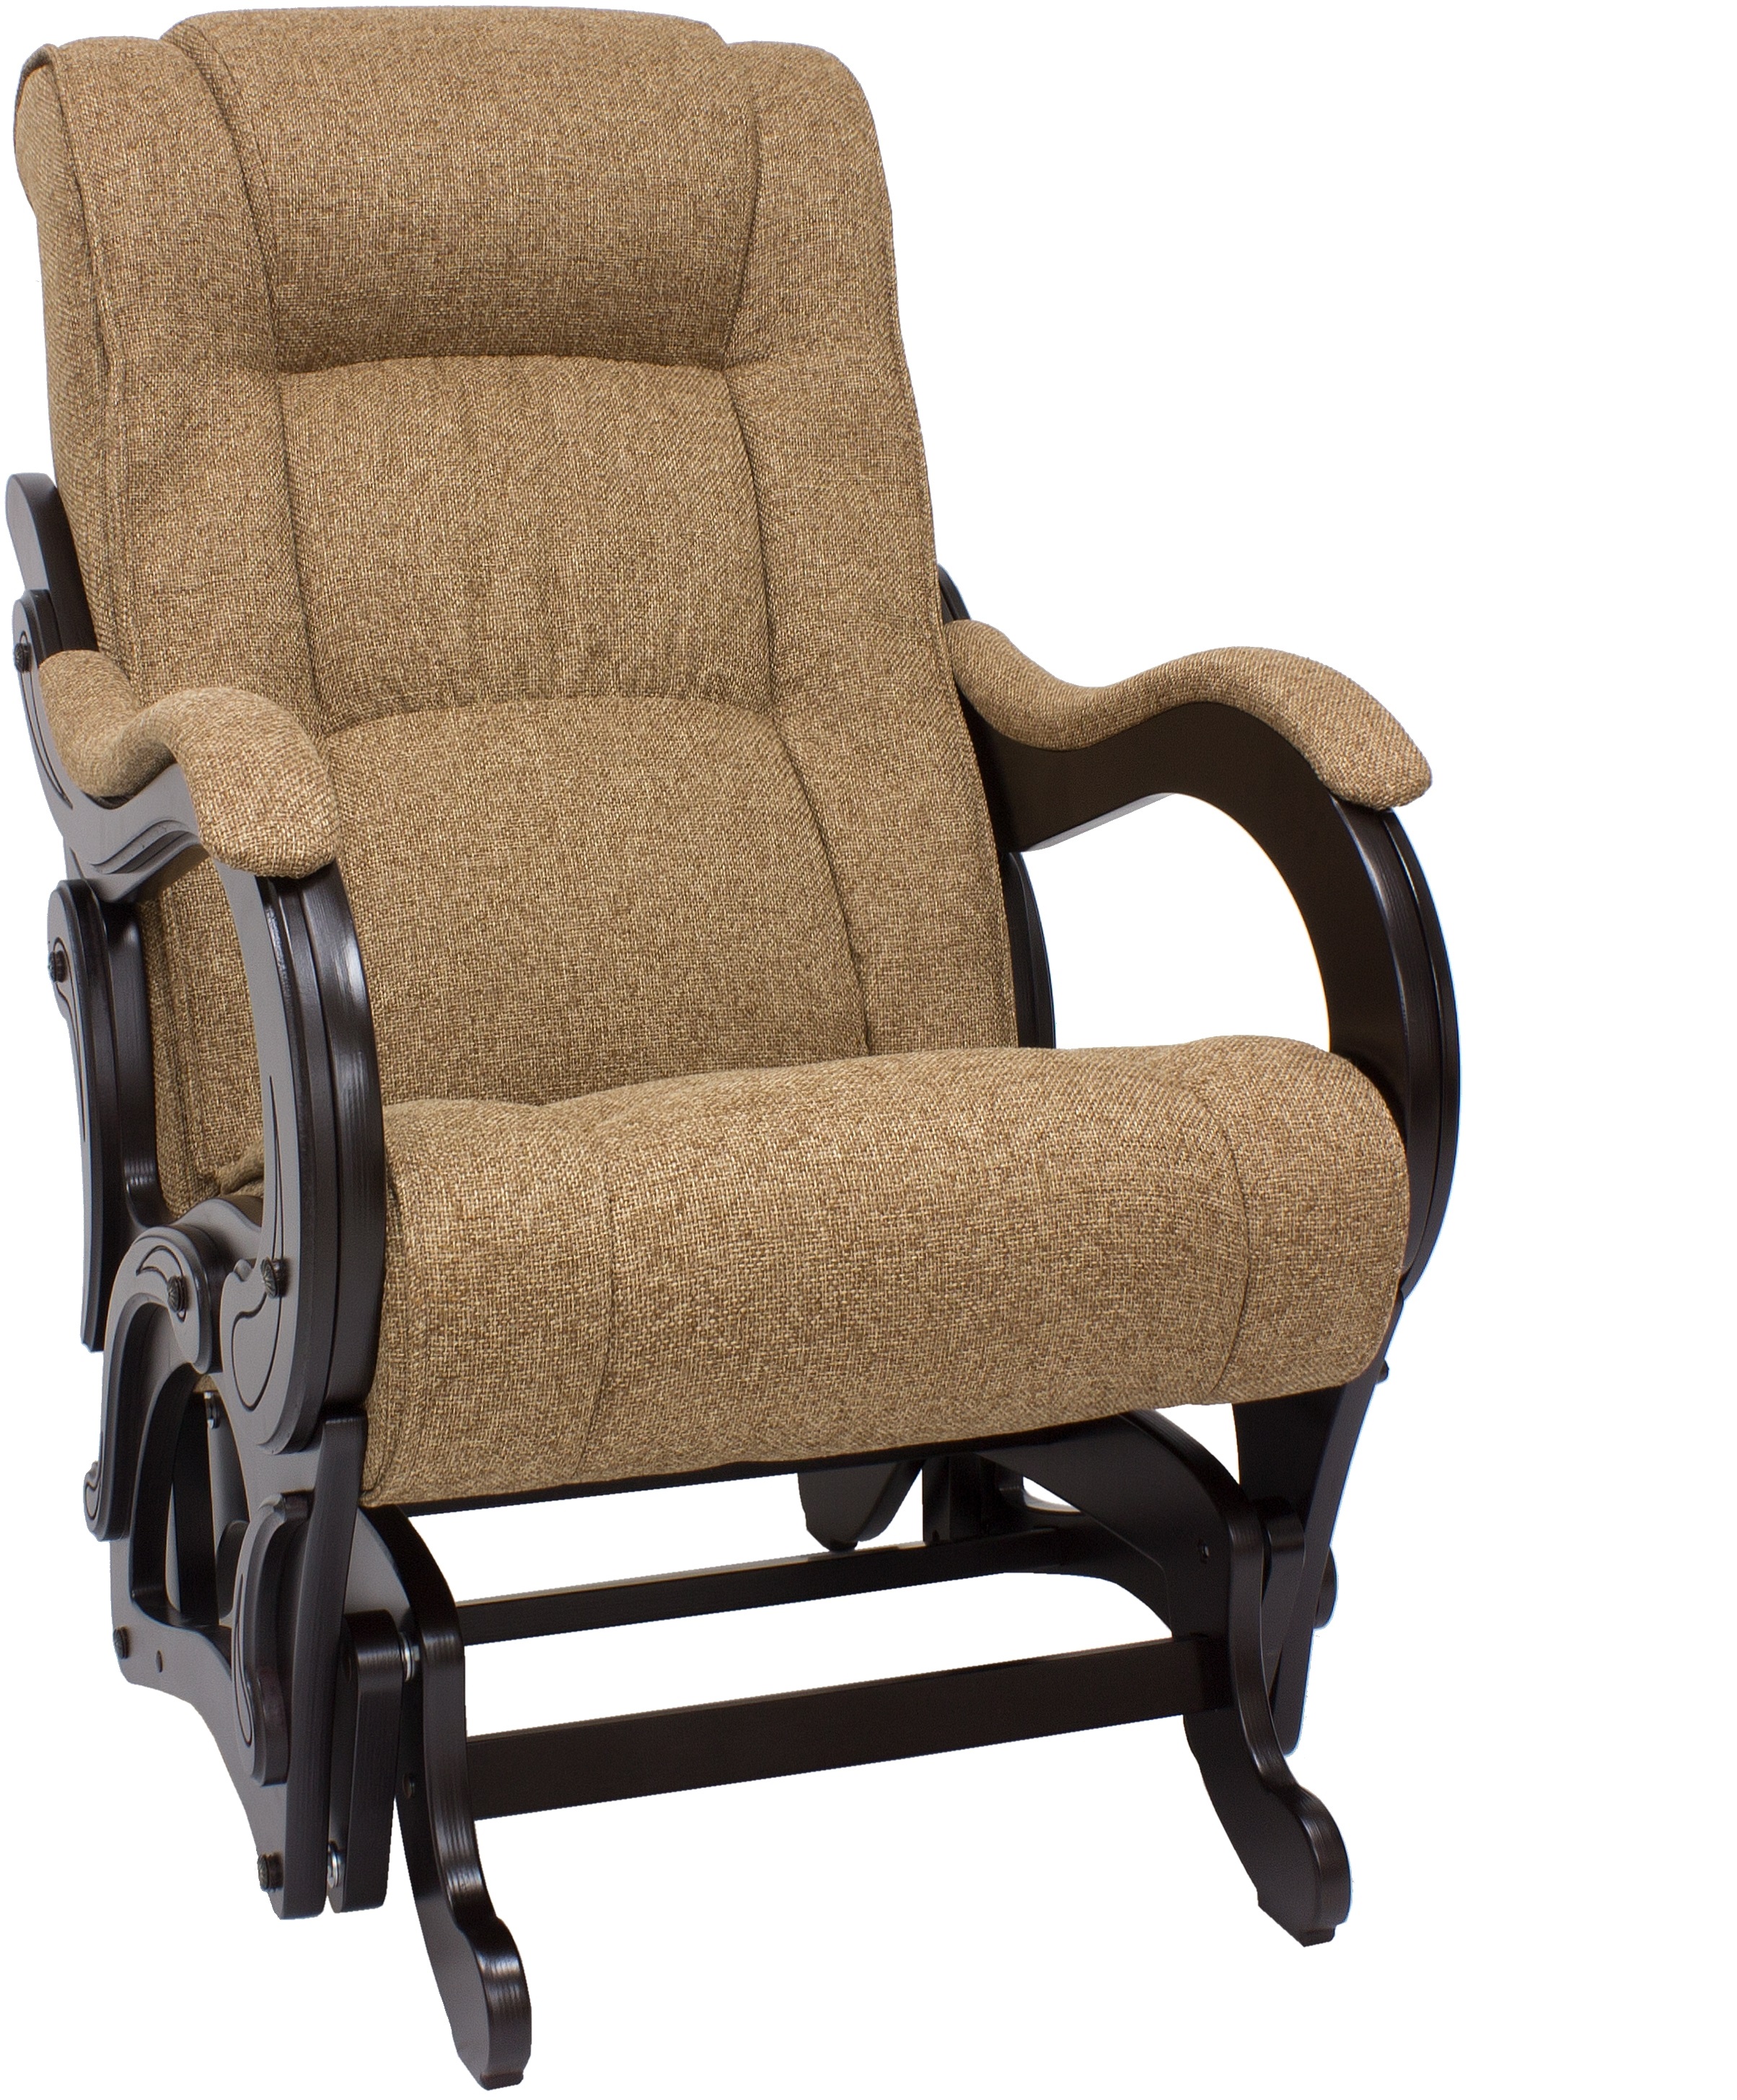 Кресло-качалка глайдер модель 78 с подлокотниками купить в Москве винтернет-магазине Mebelike.ru